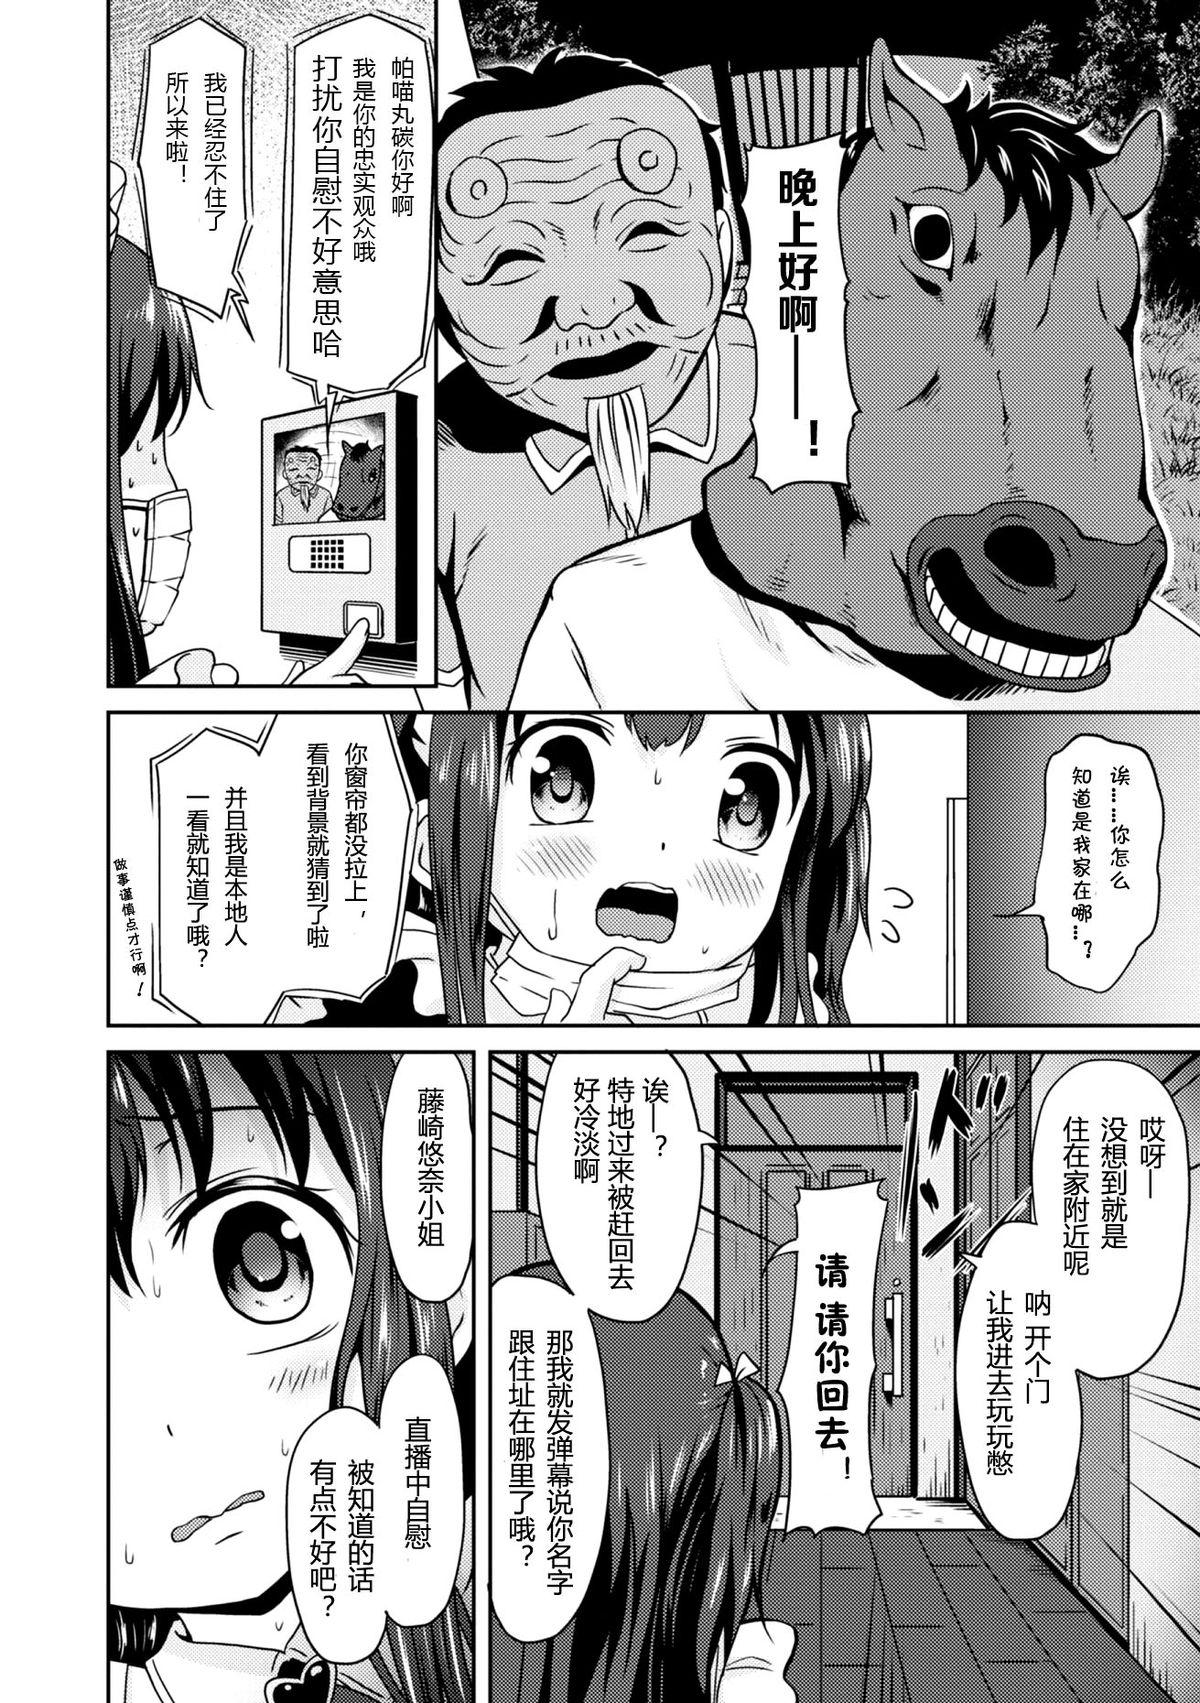 Sentando "Jigoku no" Panyumaru Seihaishin - Maboroshi no Guest Kai "ReaTotsu" Perverted - Page 6